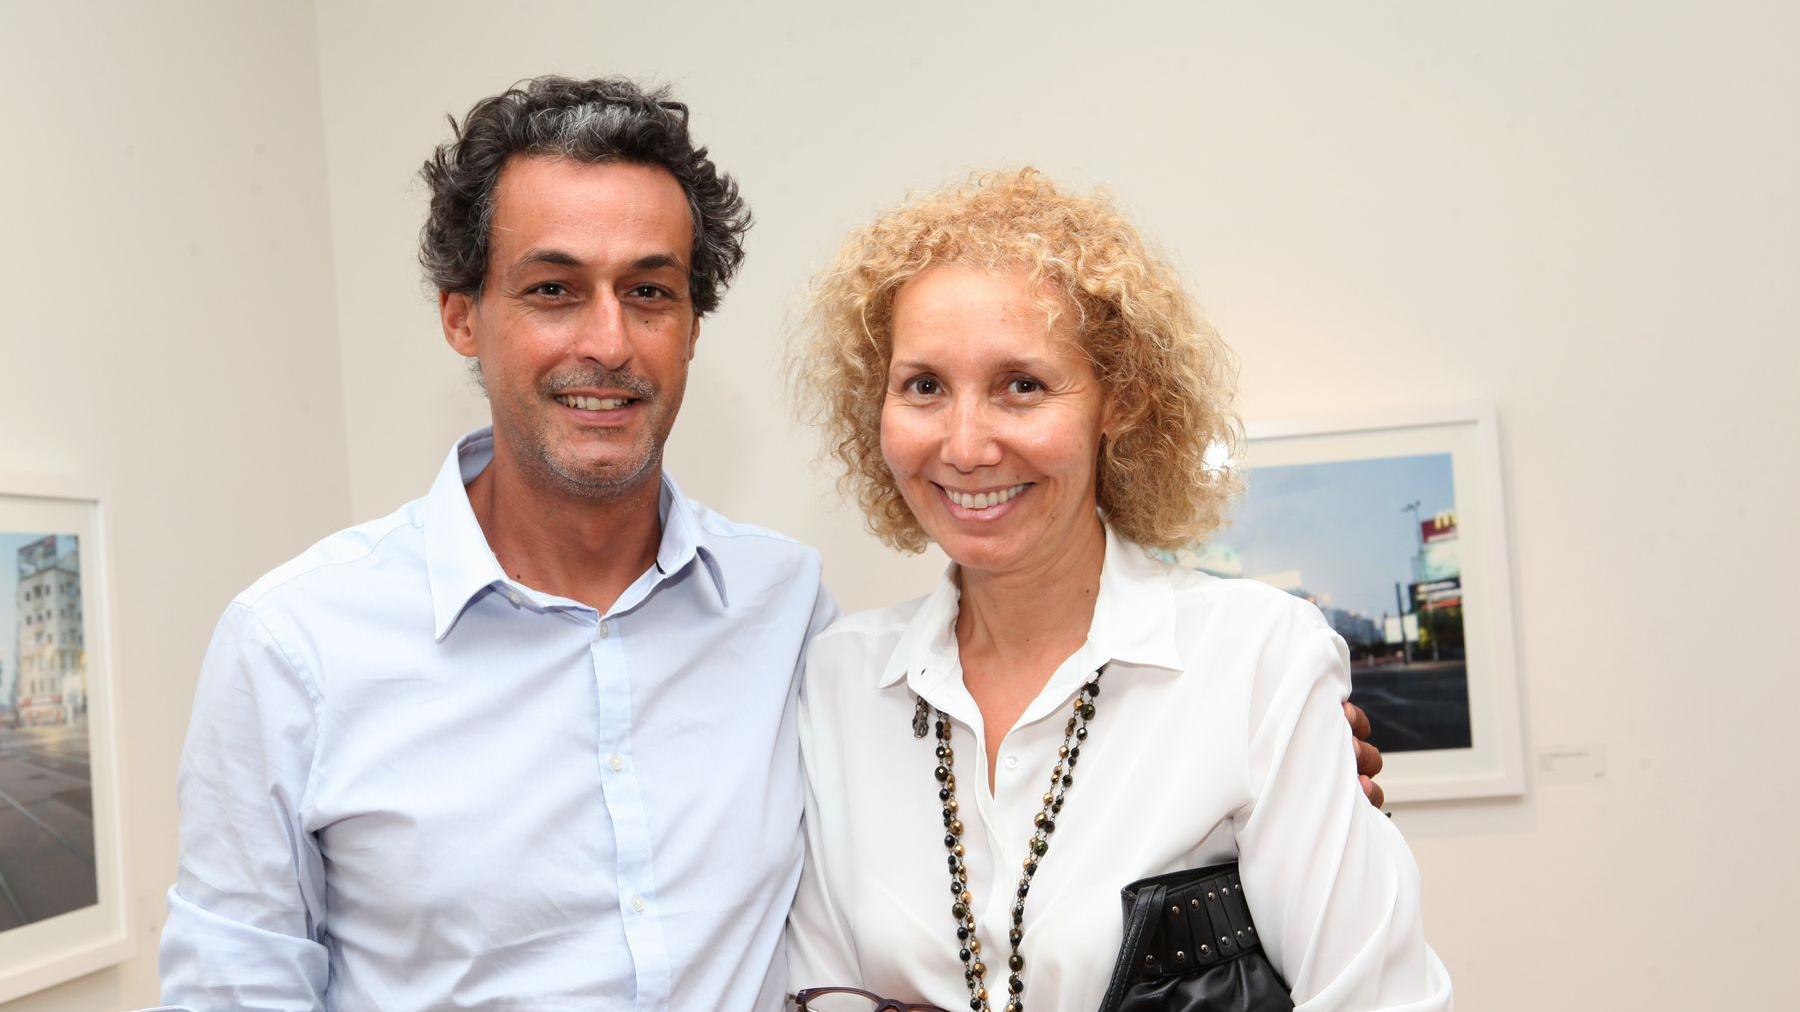 Ali Kettani et Mounat Cherrat étaienet présents pour le vernissage de l'exposition qui se prolongera jusqu'au 19 janvier 2015, dans les locaux de la Fondation Alliances.
